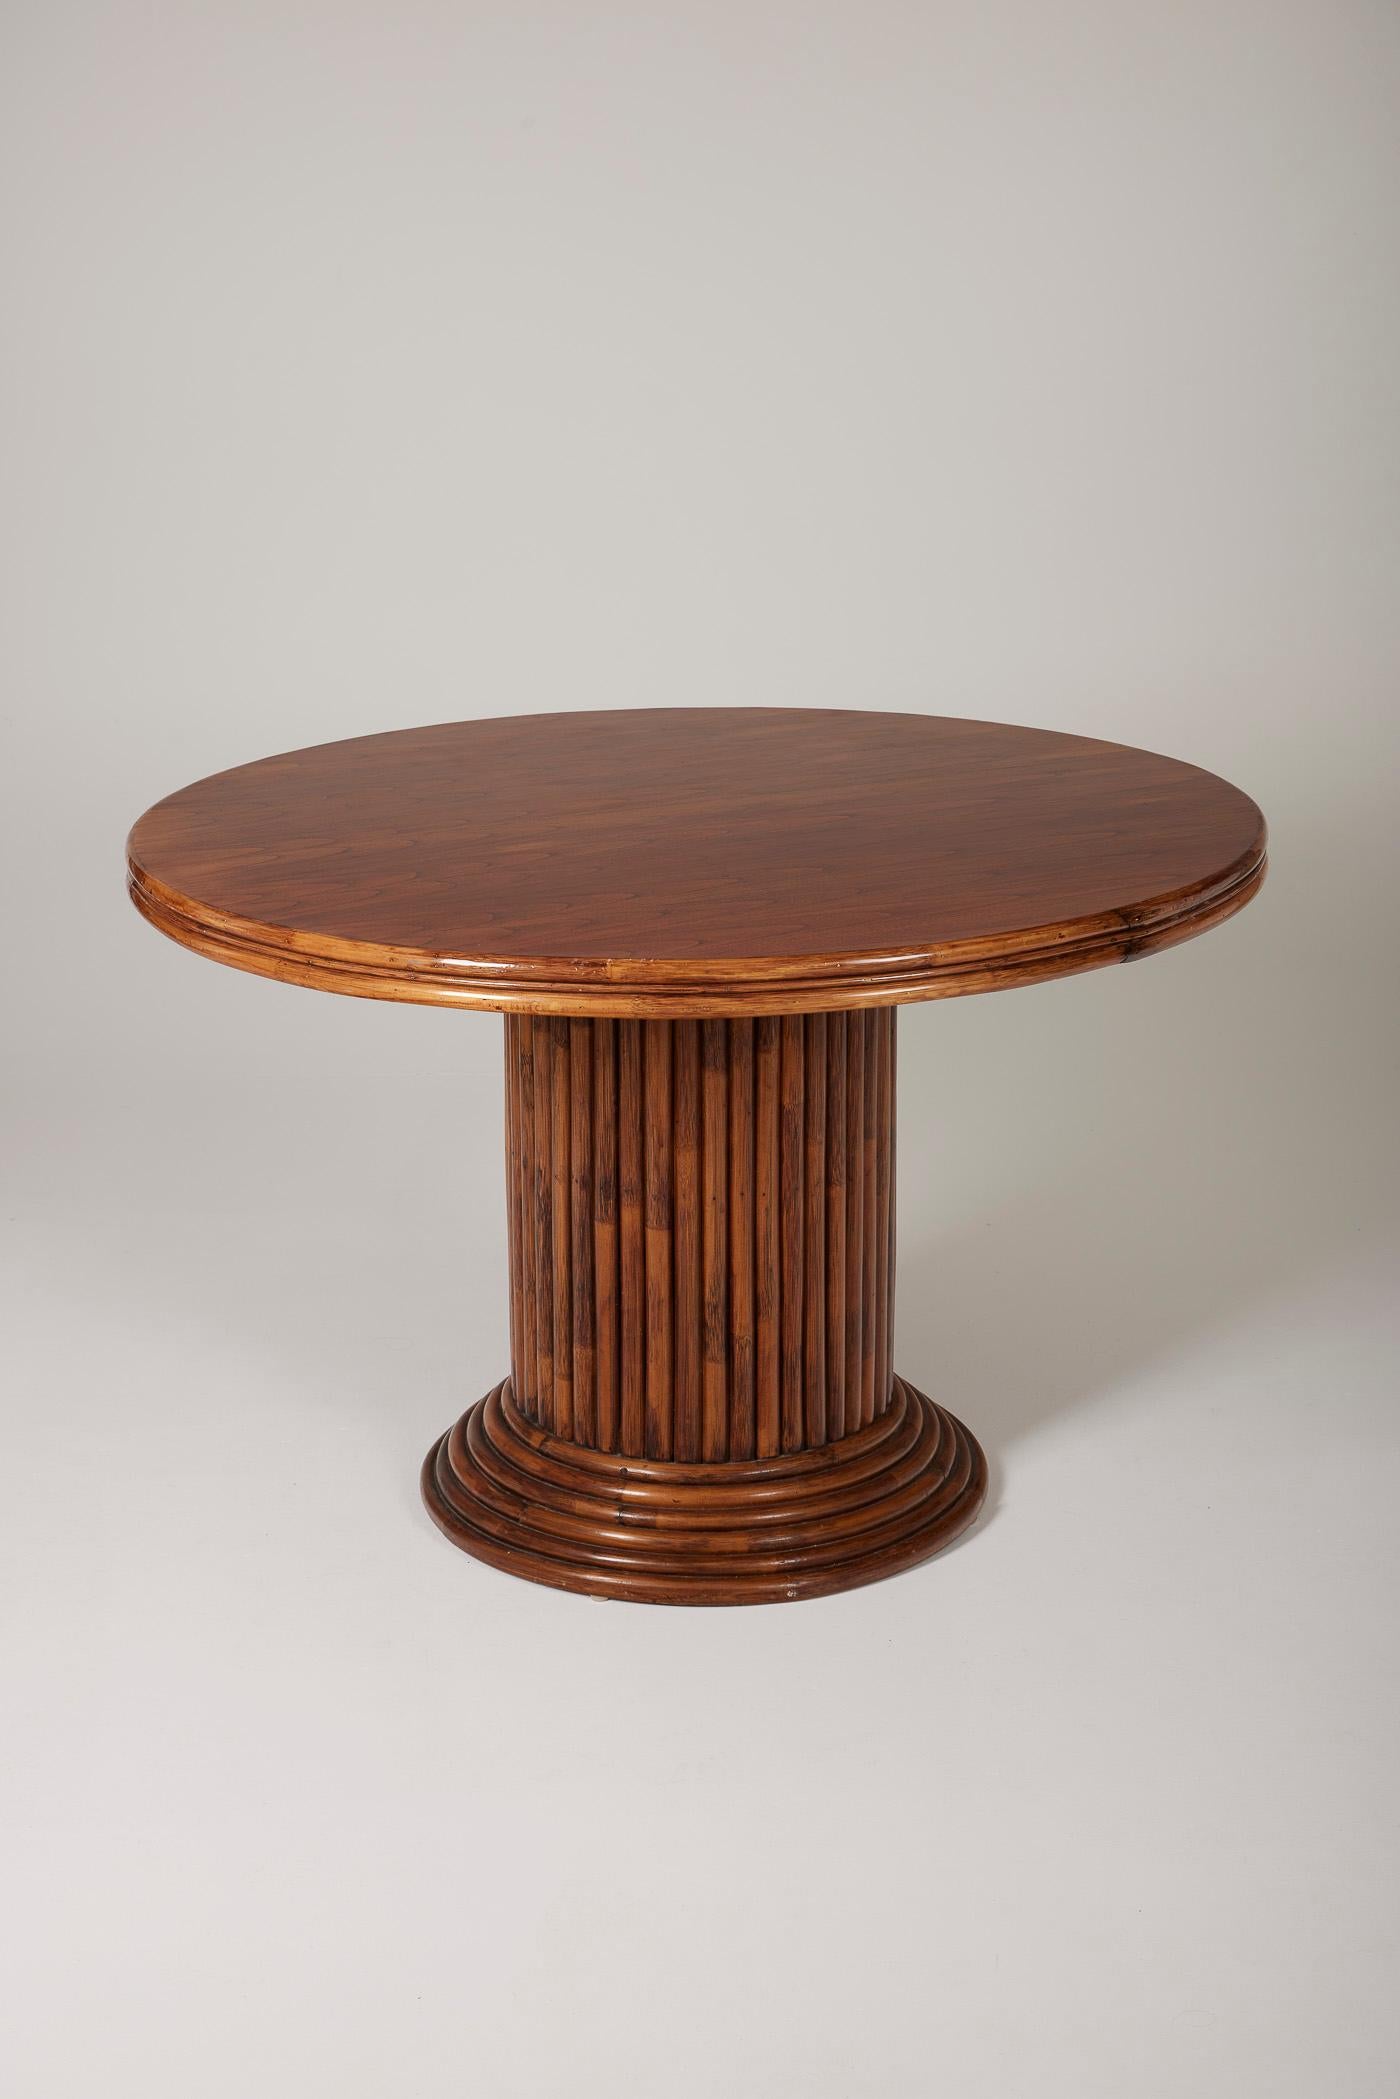 Table de salle à manger dans le style des années 60. Plateau rond en bois et base cylindrique en bambou. Très bon état.
LP1697